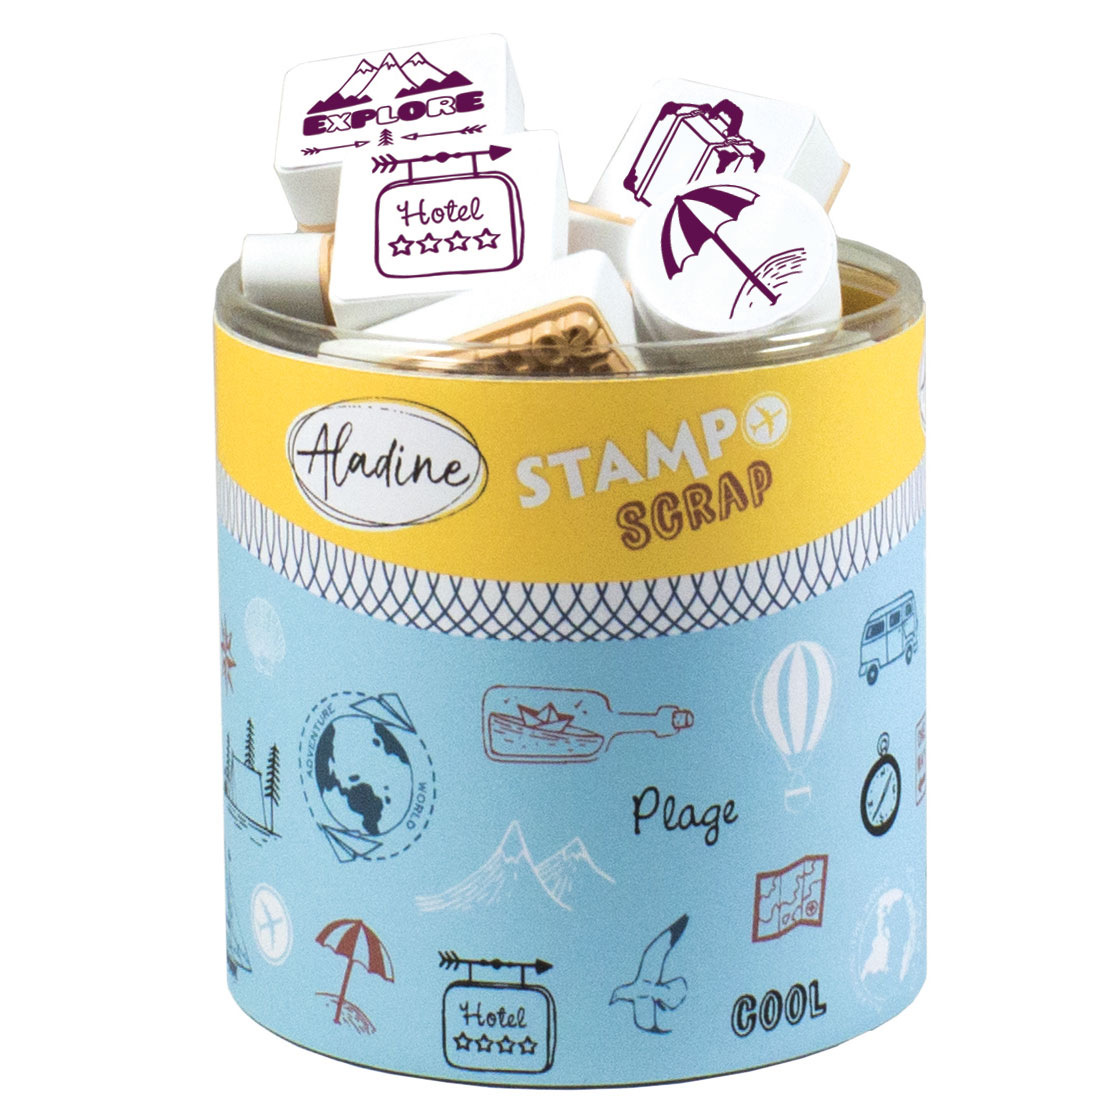 Stampo Scrap - Voyage